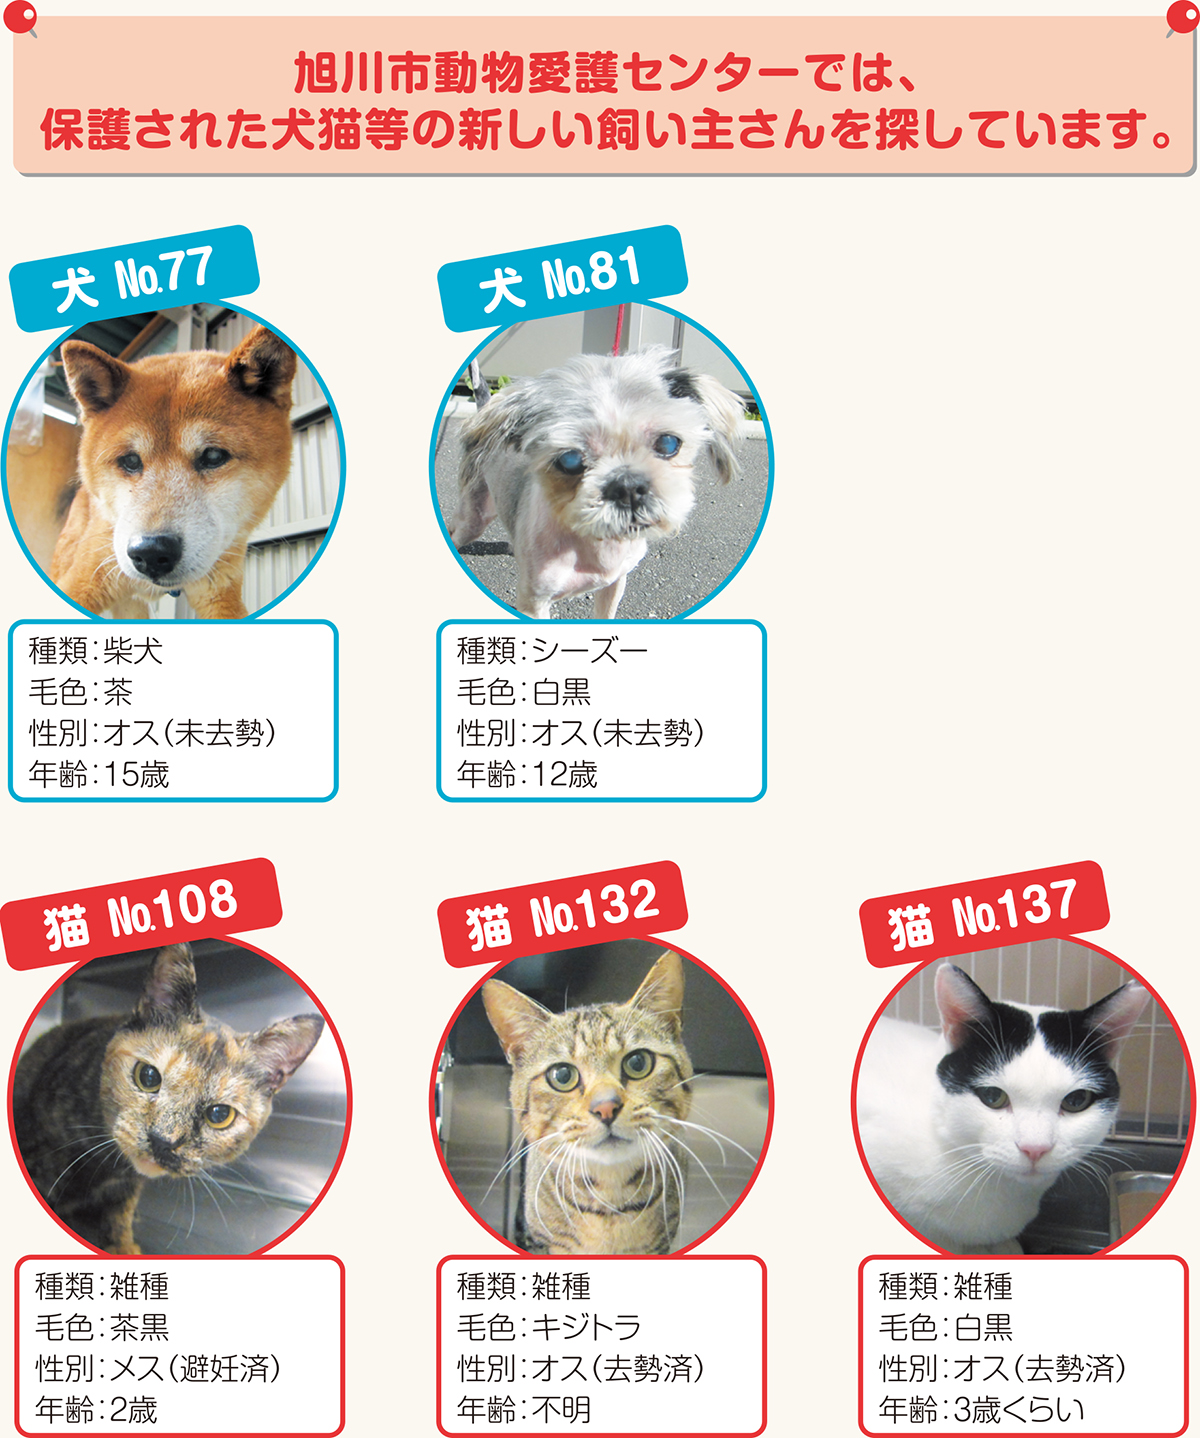 Vol.69 犬猫等の新しい飼い主さん募集中 | 北海道新聞 旭川支社 + 